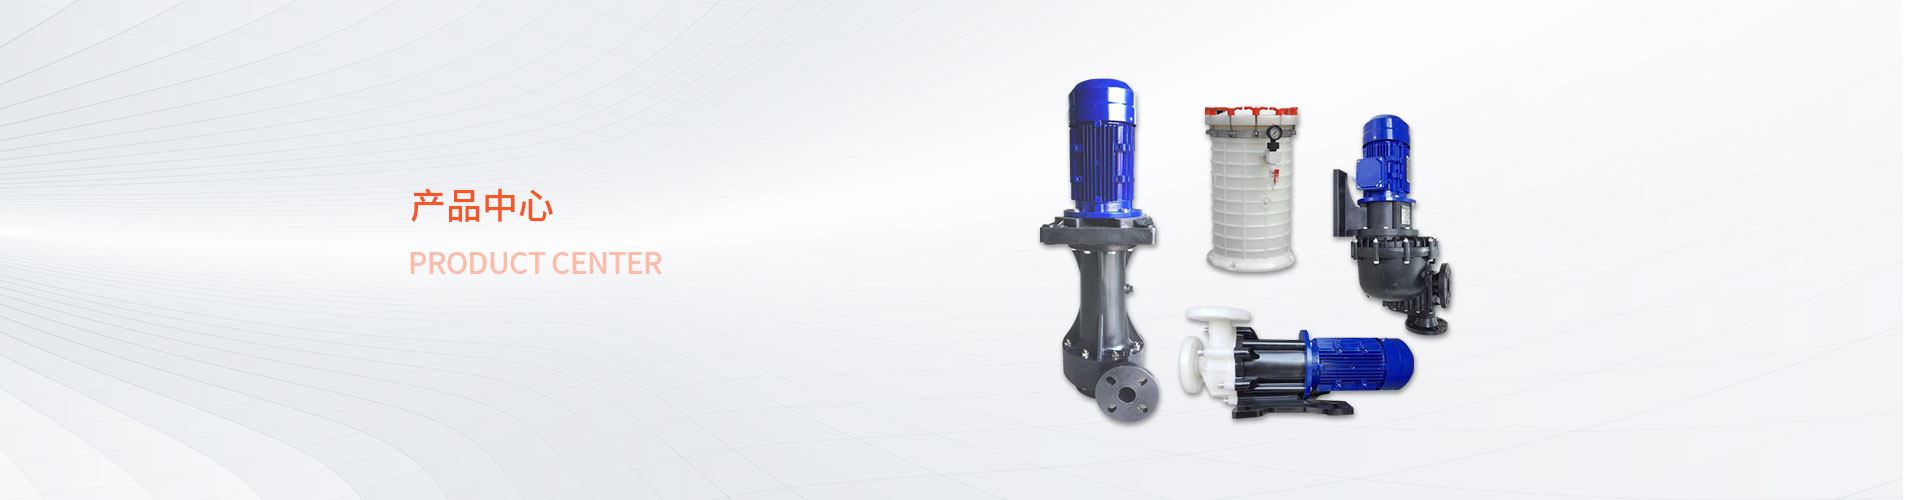 自吸式耐酸碱泵-深圳市日泰工业设备有限公司